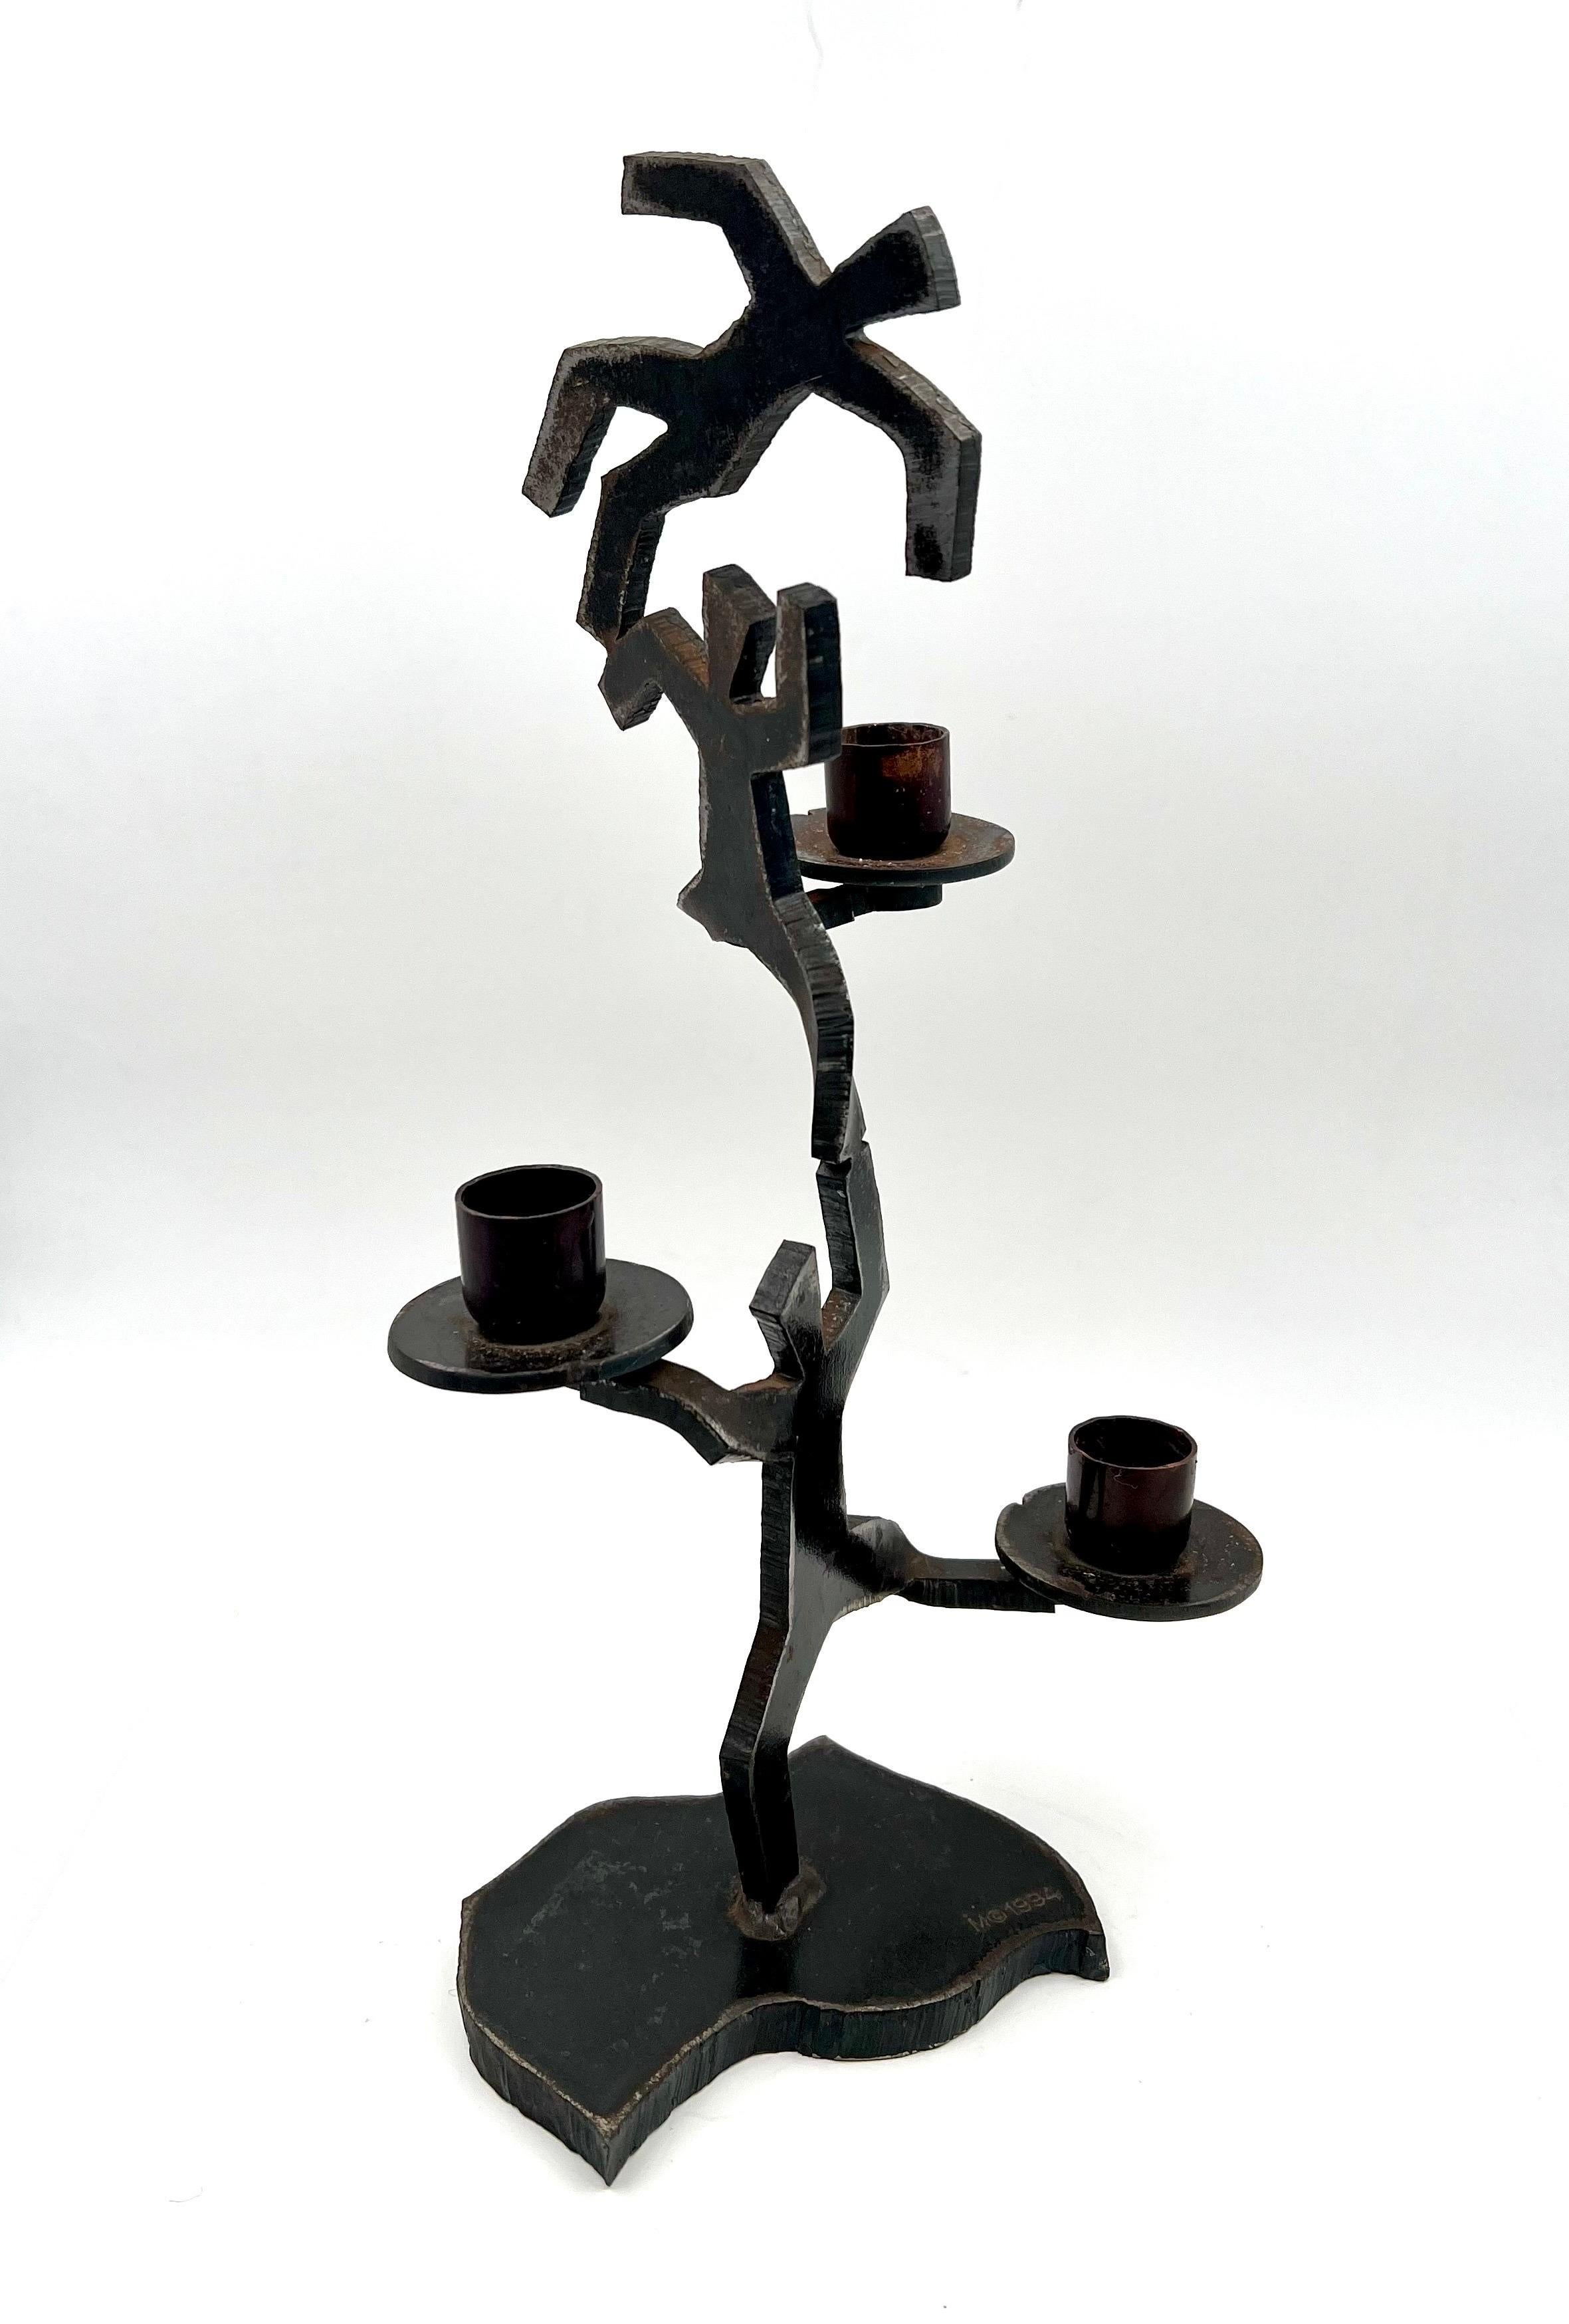 Un rare bougeoir estampillé M 1994, figurines en fer soudées au chalumeau d'après Keith Haring, chaque bougeoir peut accueillir une bougie de 3/4